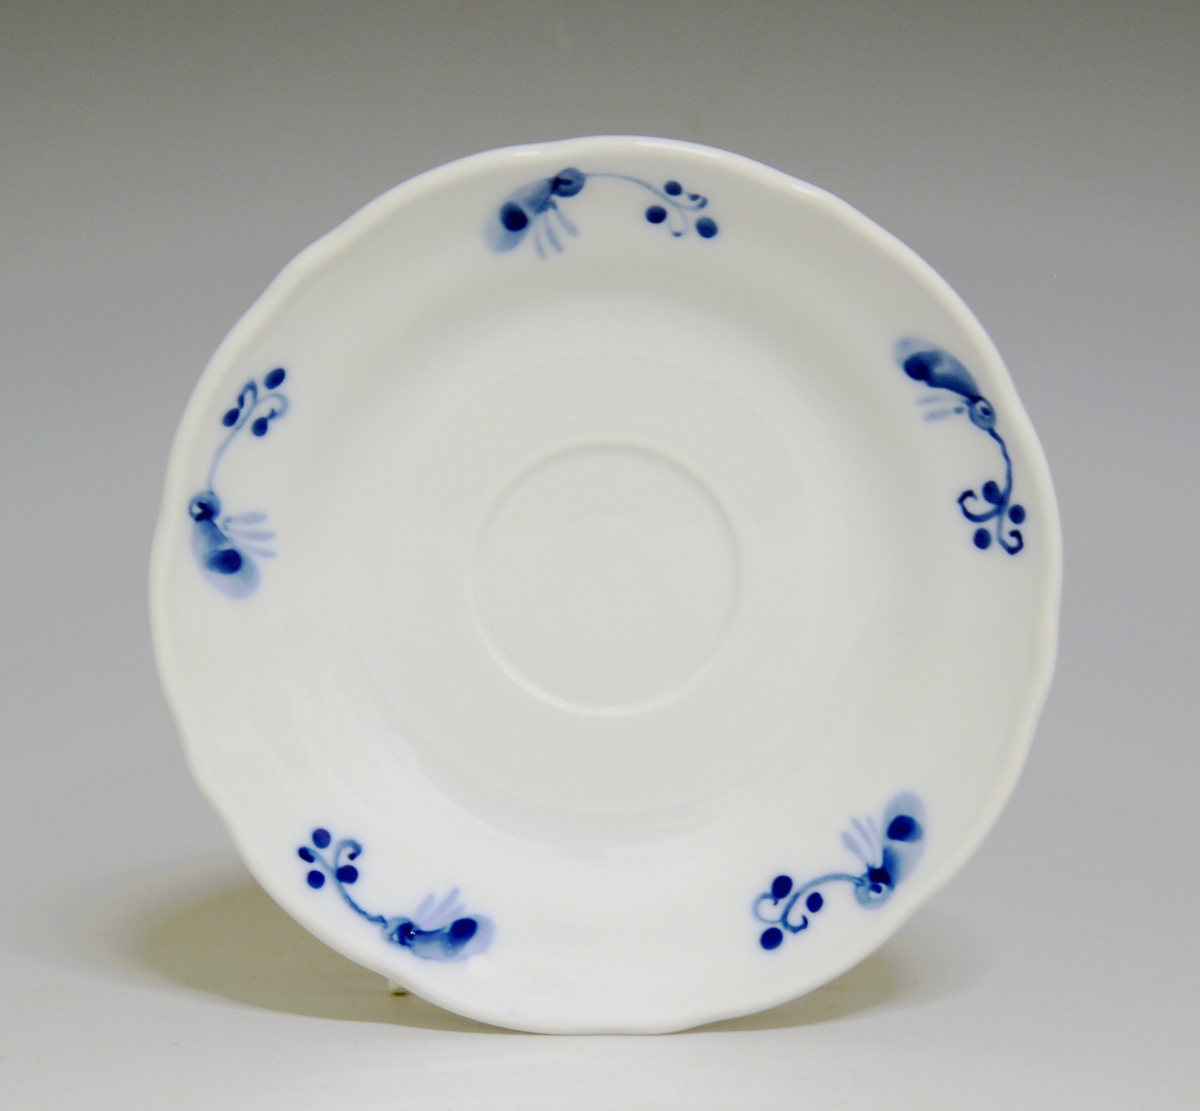 Kaffeskål av porselen. Hvit glasur. Håndmalt blå underglasurdekor i fem felter på fanen.
Modell: Victoria, 1800
Uten fabrikkmerke.